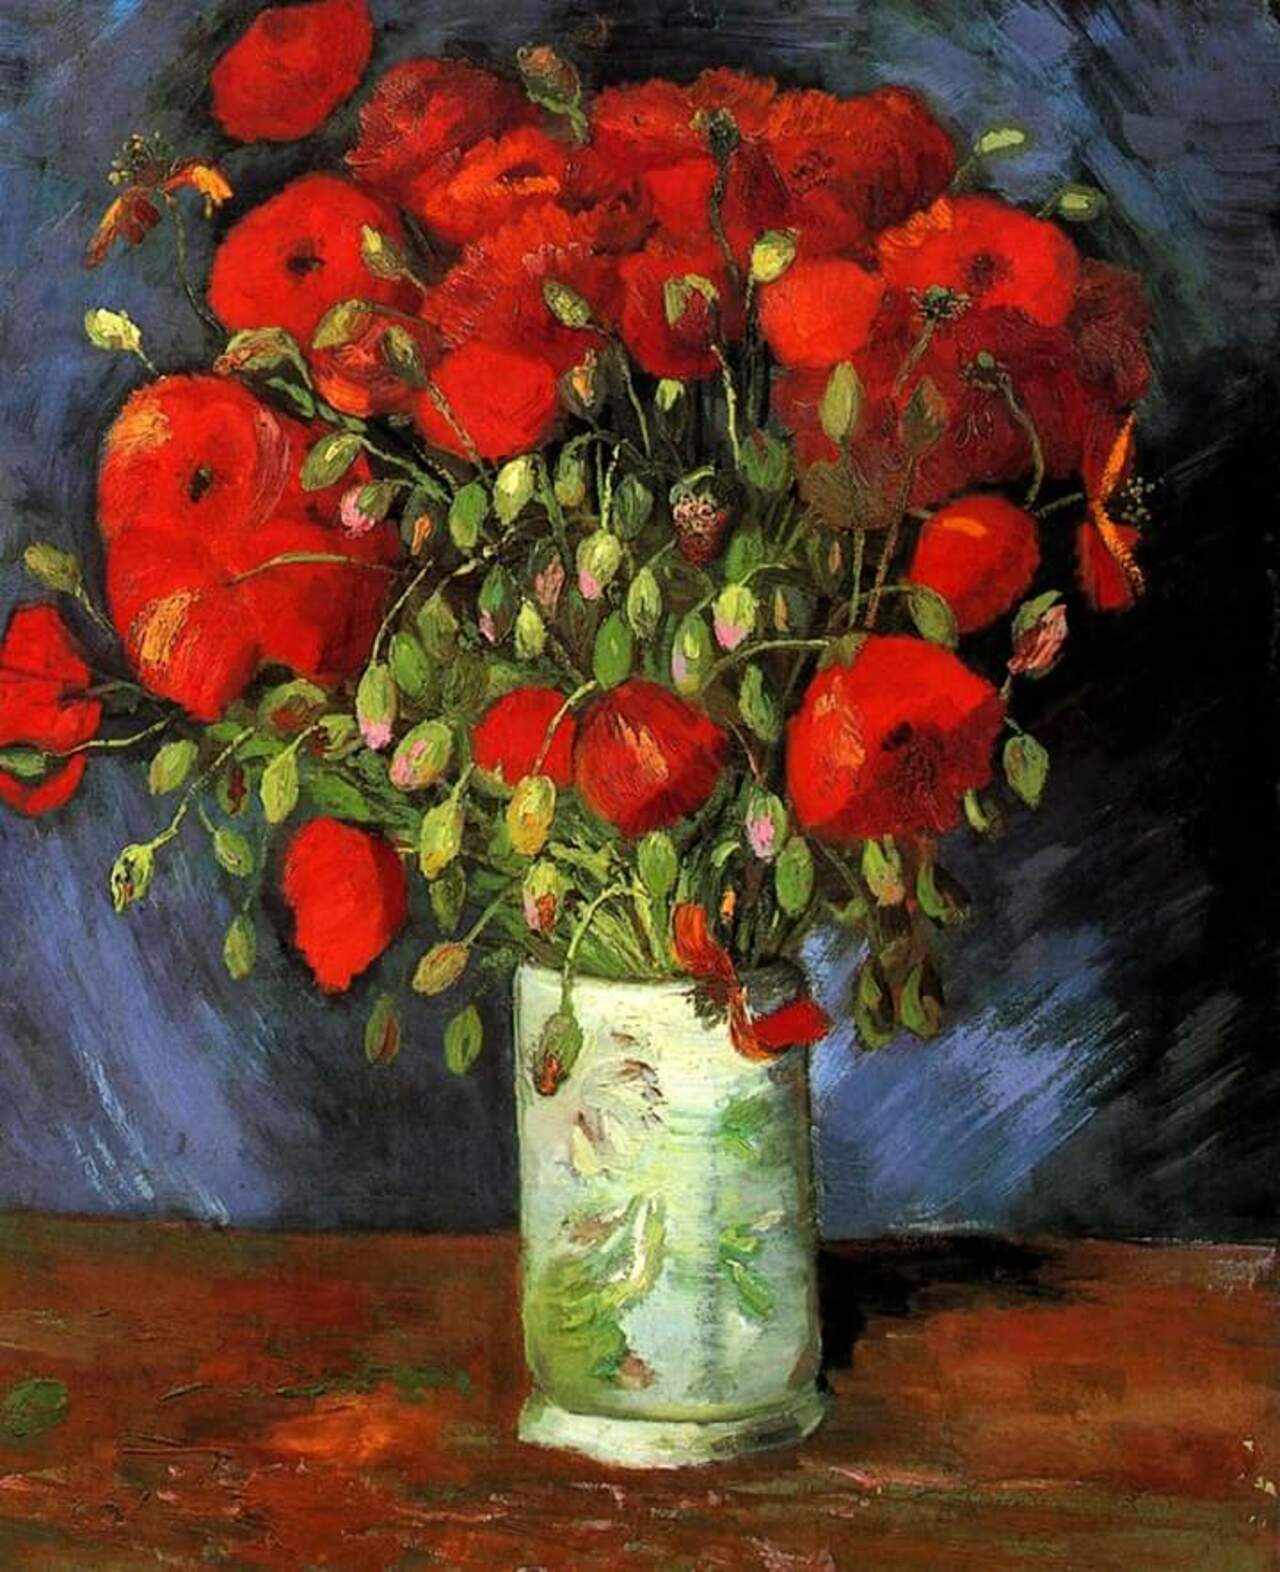 RT @xabier2013: Vase with red poppies. #VanGogh #arte #art #pittura #painting https://t.co/k3vwN4elmR